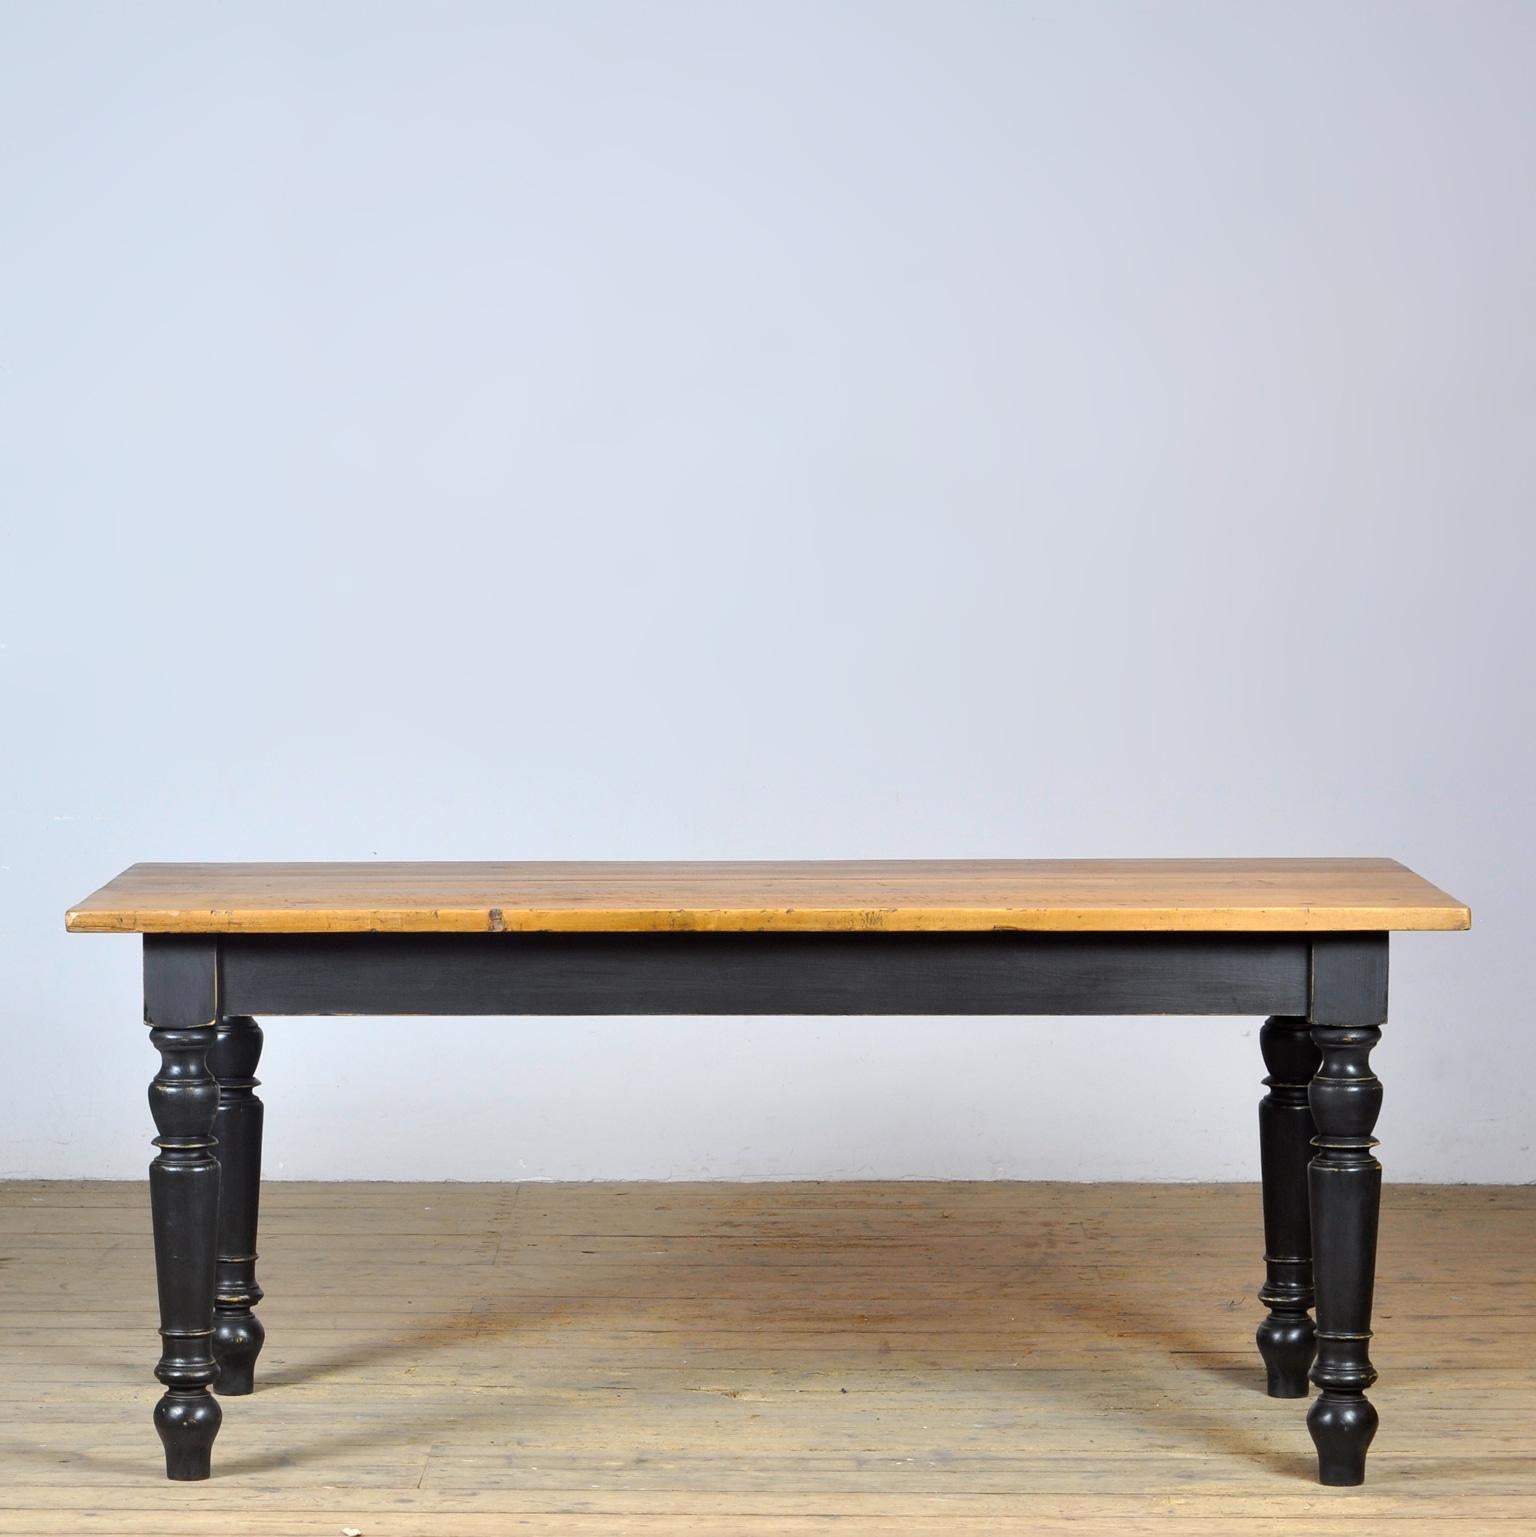 Bauernhoftisch mit schönem Distressed Top. Der Deckel wurde um 1920 hergestellt. Die Beine sind neu. Der Tisch bietet Platz für 8 Personen.